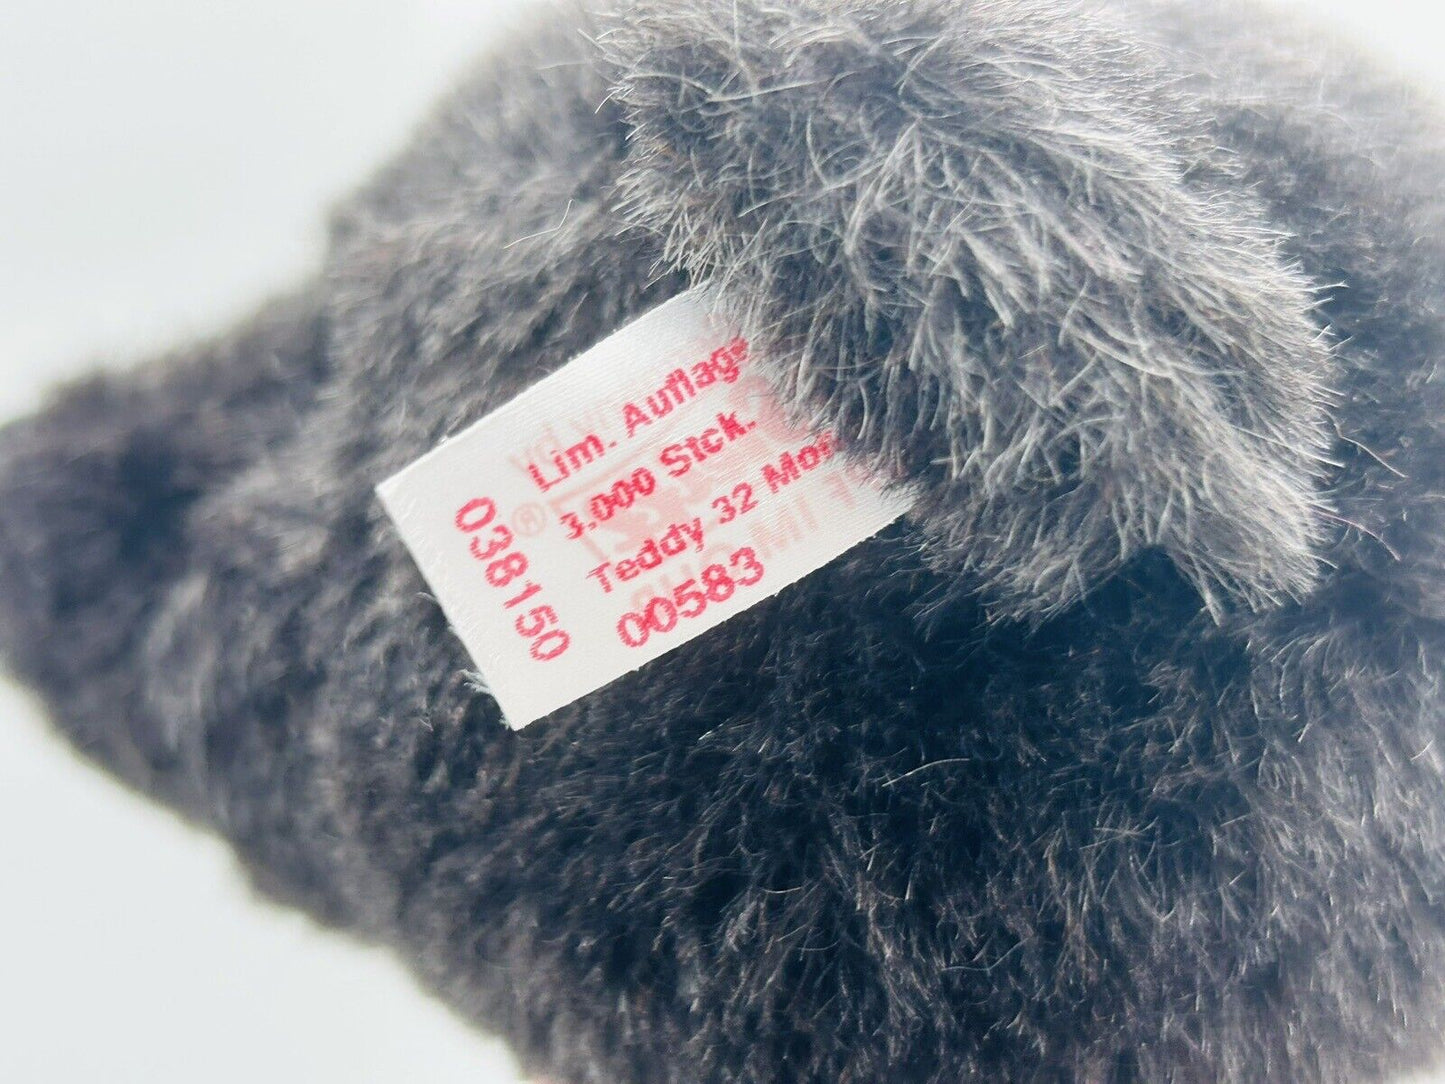 Steiff 038150 Teddybär mit rotem Halsband schwarz 32 cm limitiert 3000 Exemplare